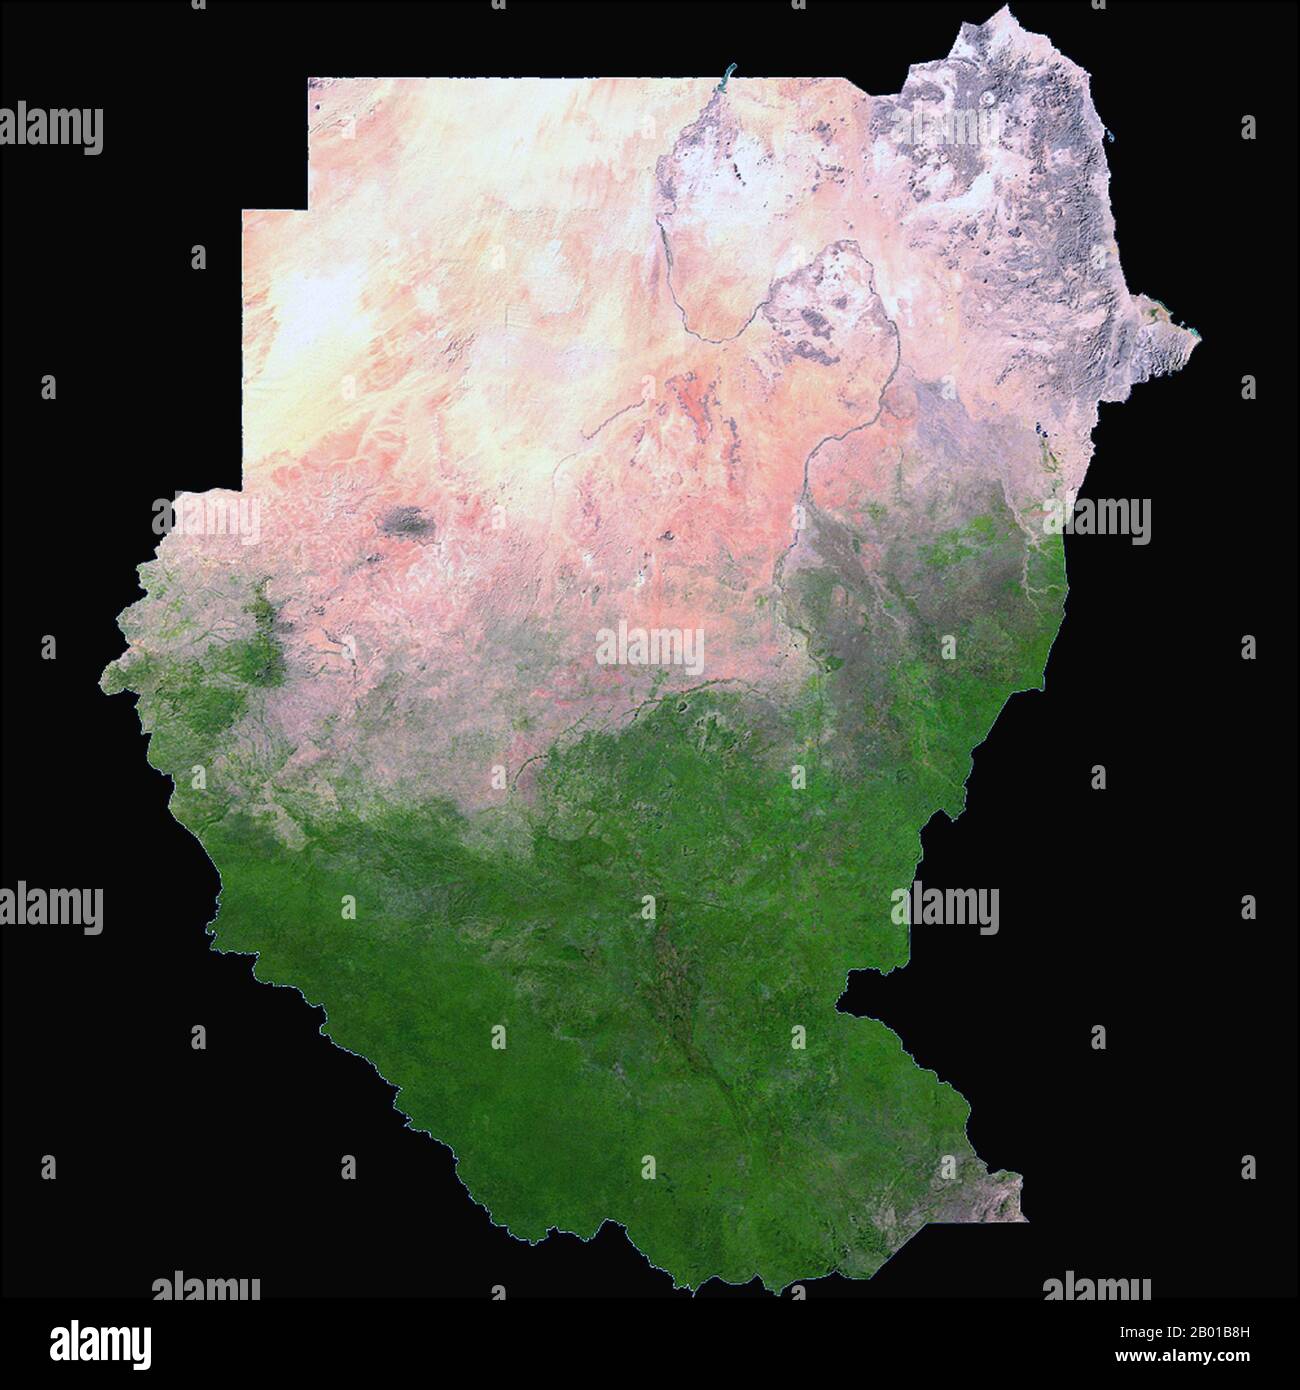 Sudan/Sudan del Sud: Un'immagine satellitare della NASA del Sudan e del Sudan del Sud, 2006. La Repubblica del Sudan (in arabo: Jumhūrīyat al Sūdān) è un paese del Nord Africa. Confina con l'Egitto a nord, il Mar Rosso a nord-est, l'Eritrea e l'Etiopia a est, il Sudan meridionale a sud, la Repubblica Centrafricana a sud-ovest, il Ciad a ovest e la Libia a nord-ovest. Il fiume più lungo del mondo, il Nilo, divide il paese tra i lati est e ovest. Il Sudan meridionale (arabo: Janūb AS-Sūdān) è un paese indipendente senza sbocco sul mare con Juba come capitale. Foto Stock